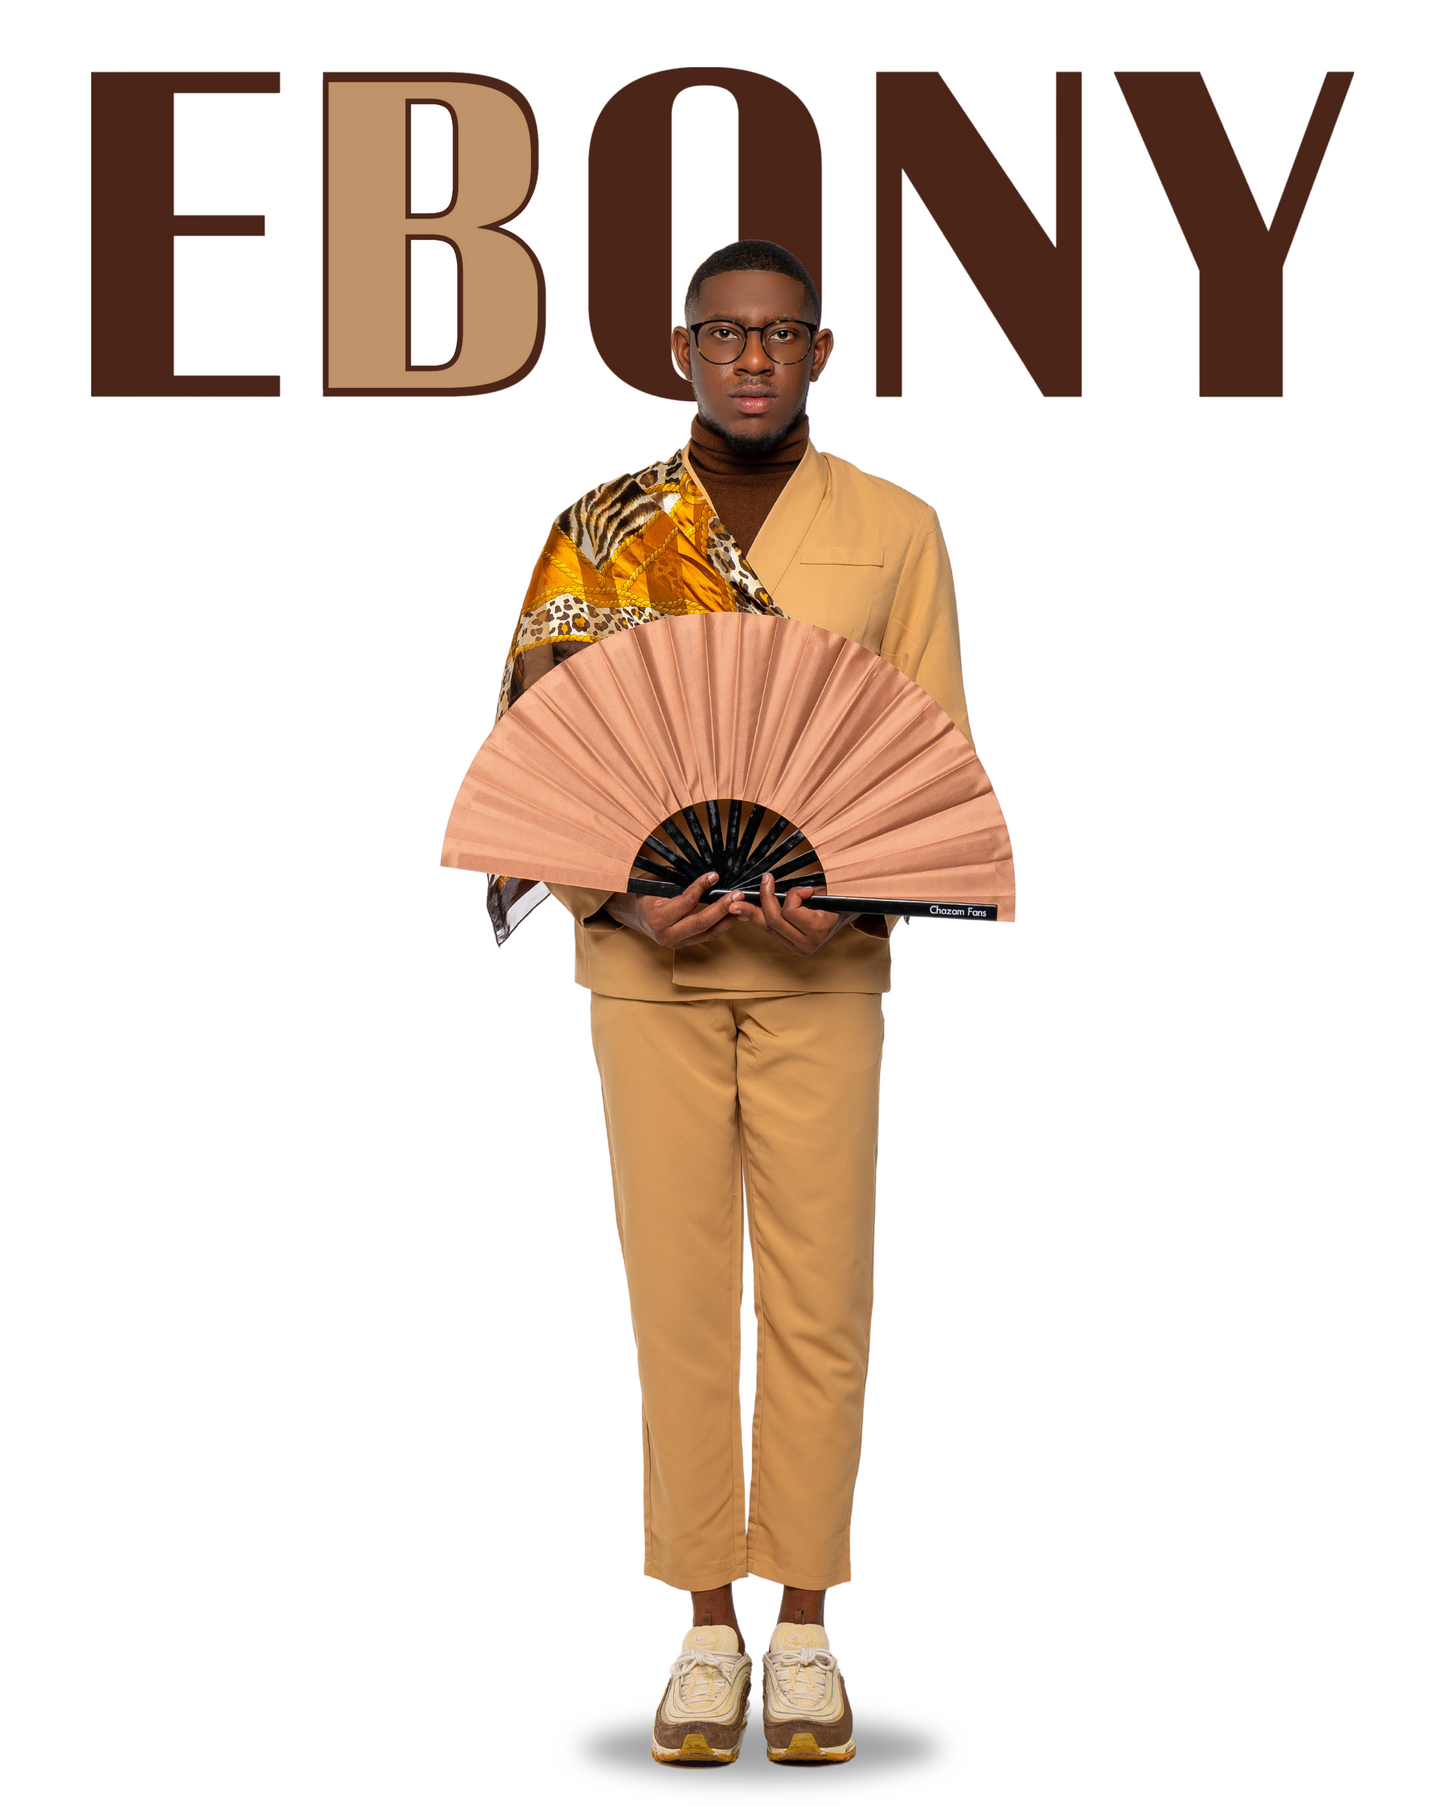 “Ebony Brown” Chazam Fan